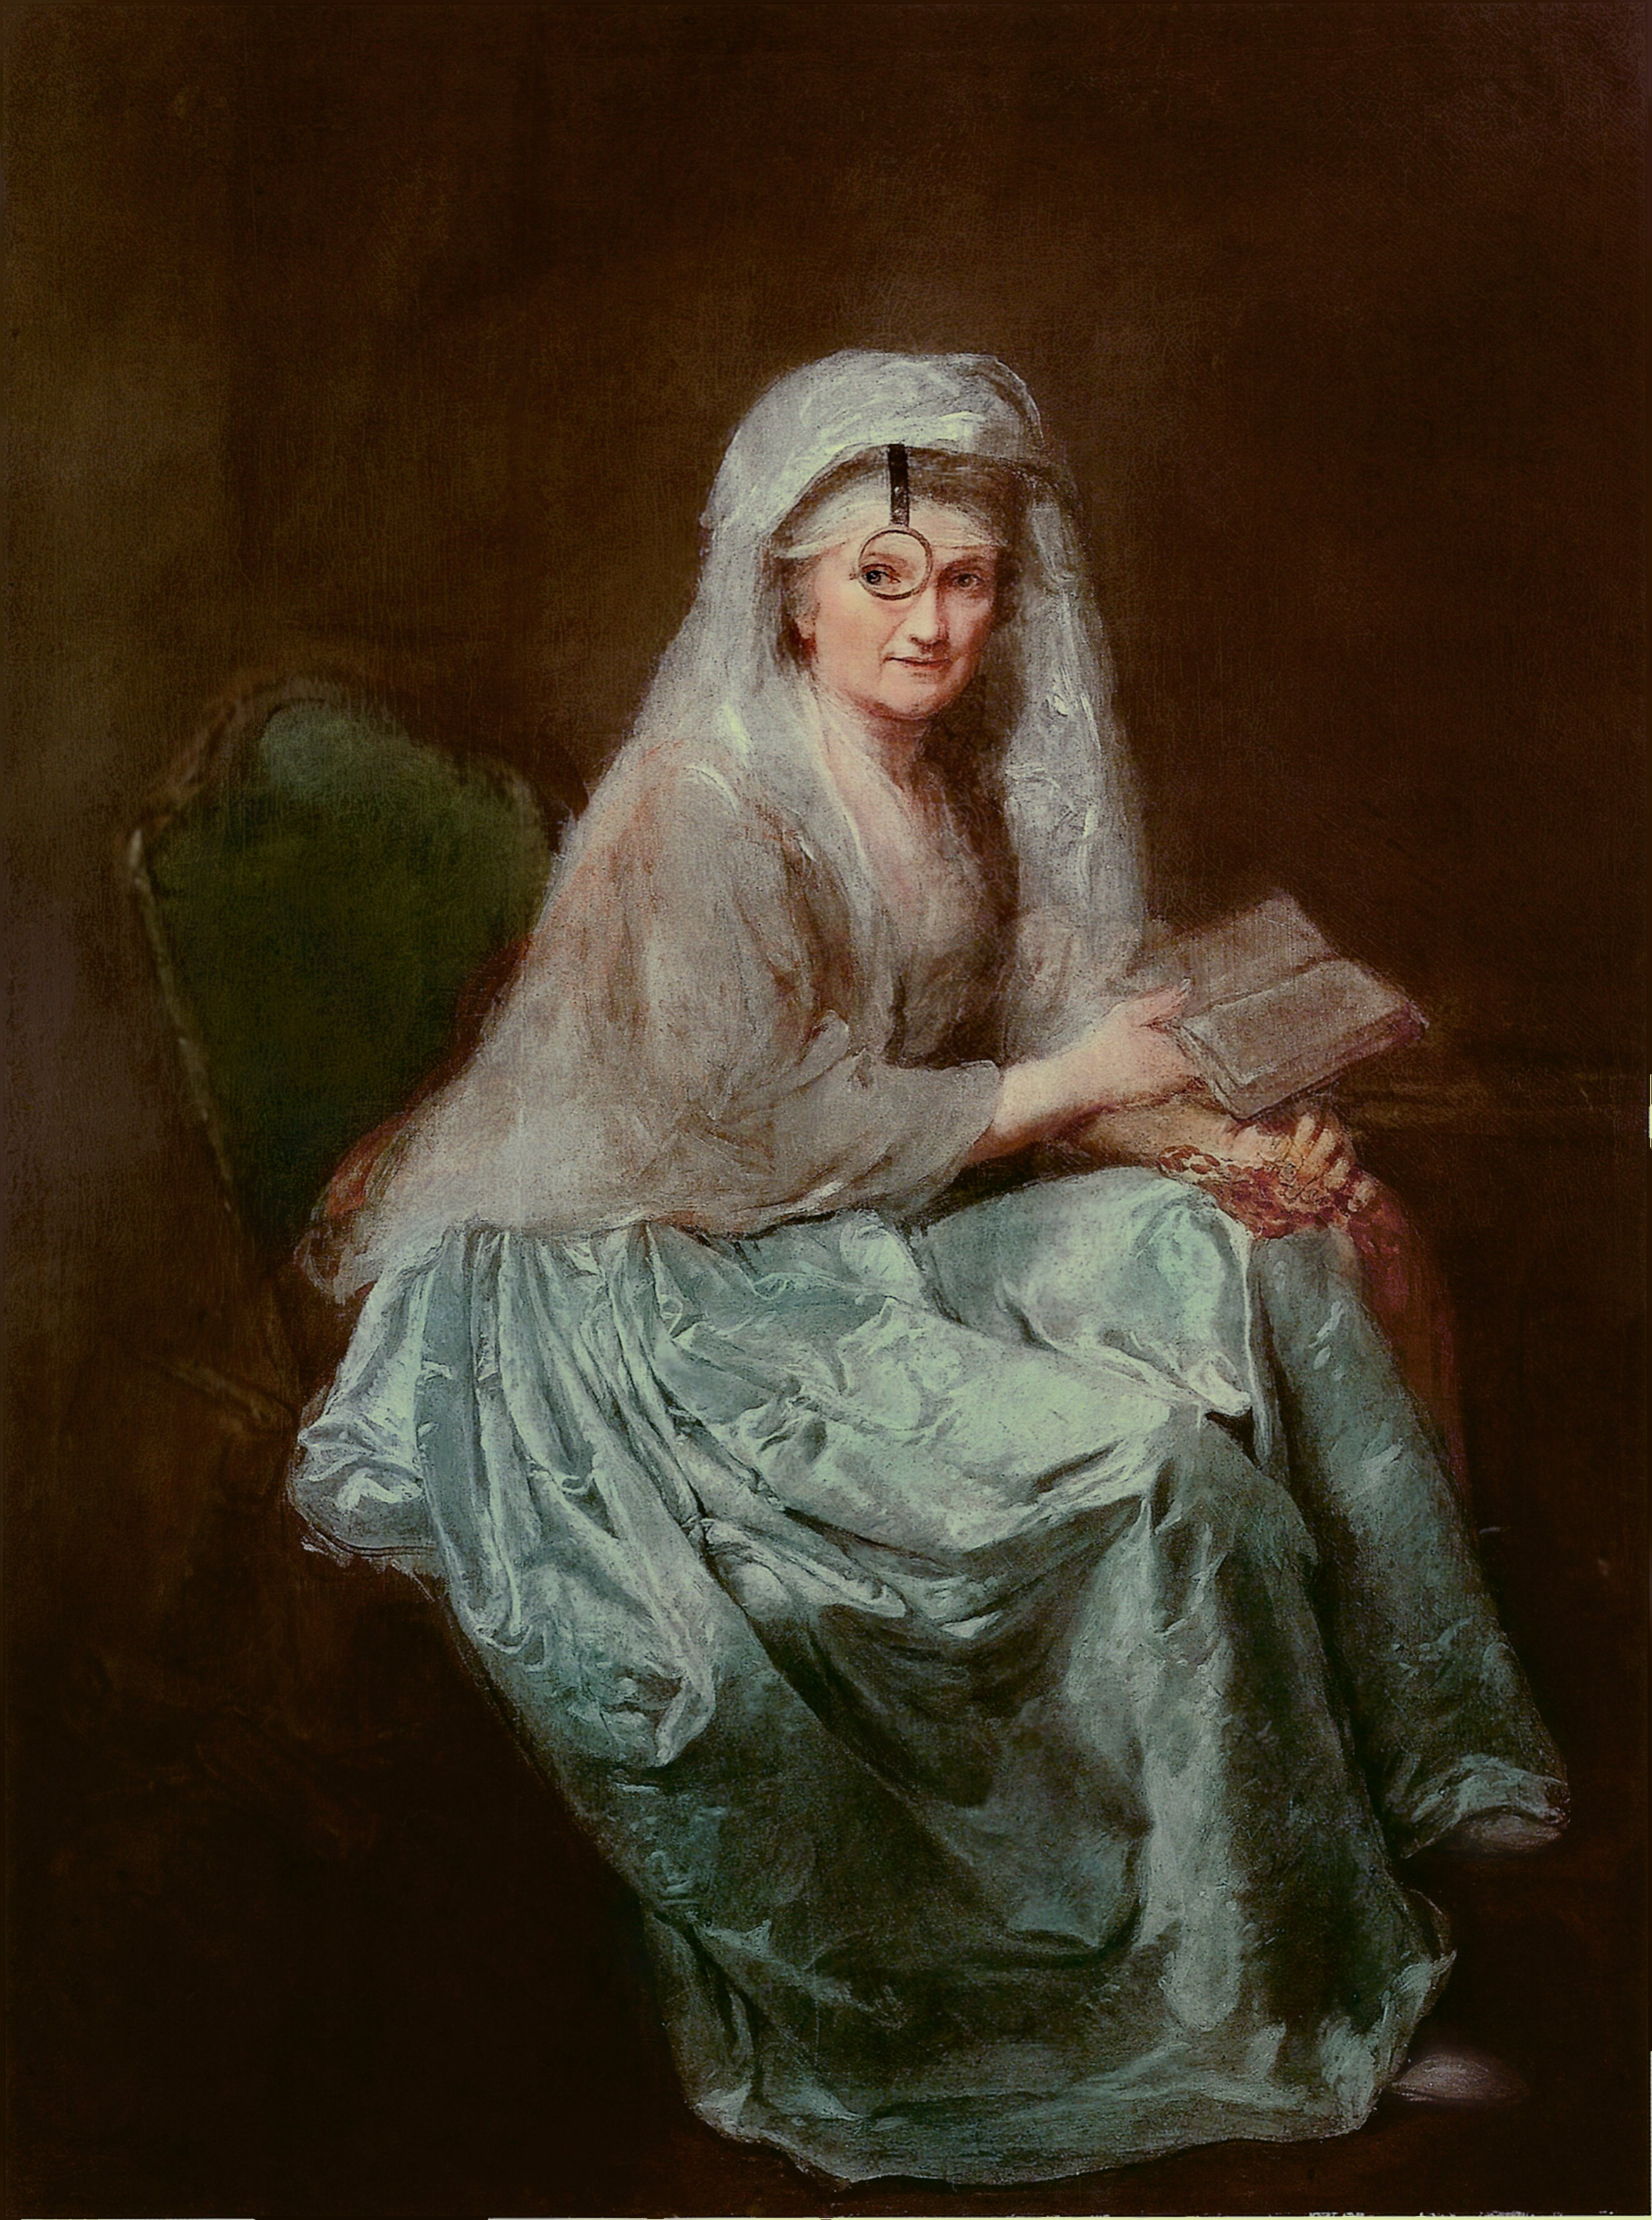 戴單片眼鏡的自畫像 by Anna Dorothea Therbusch - 1777 - 151 x 115 cm 